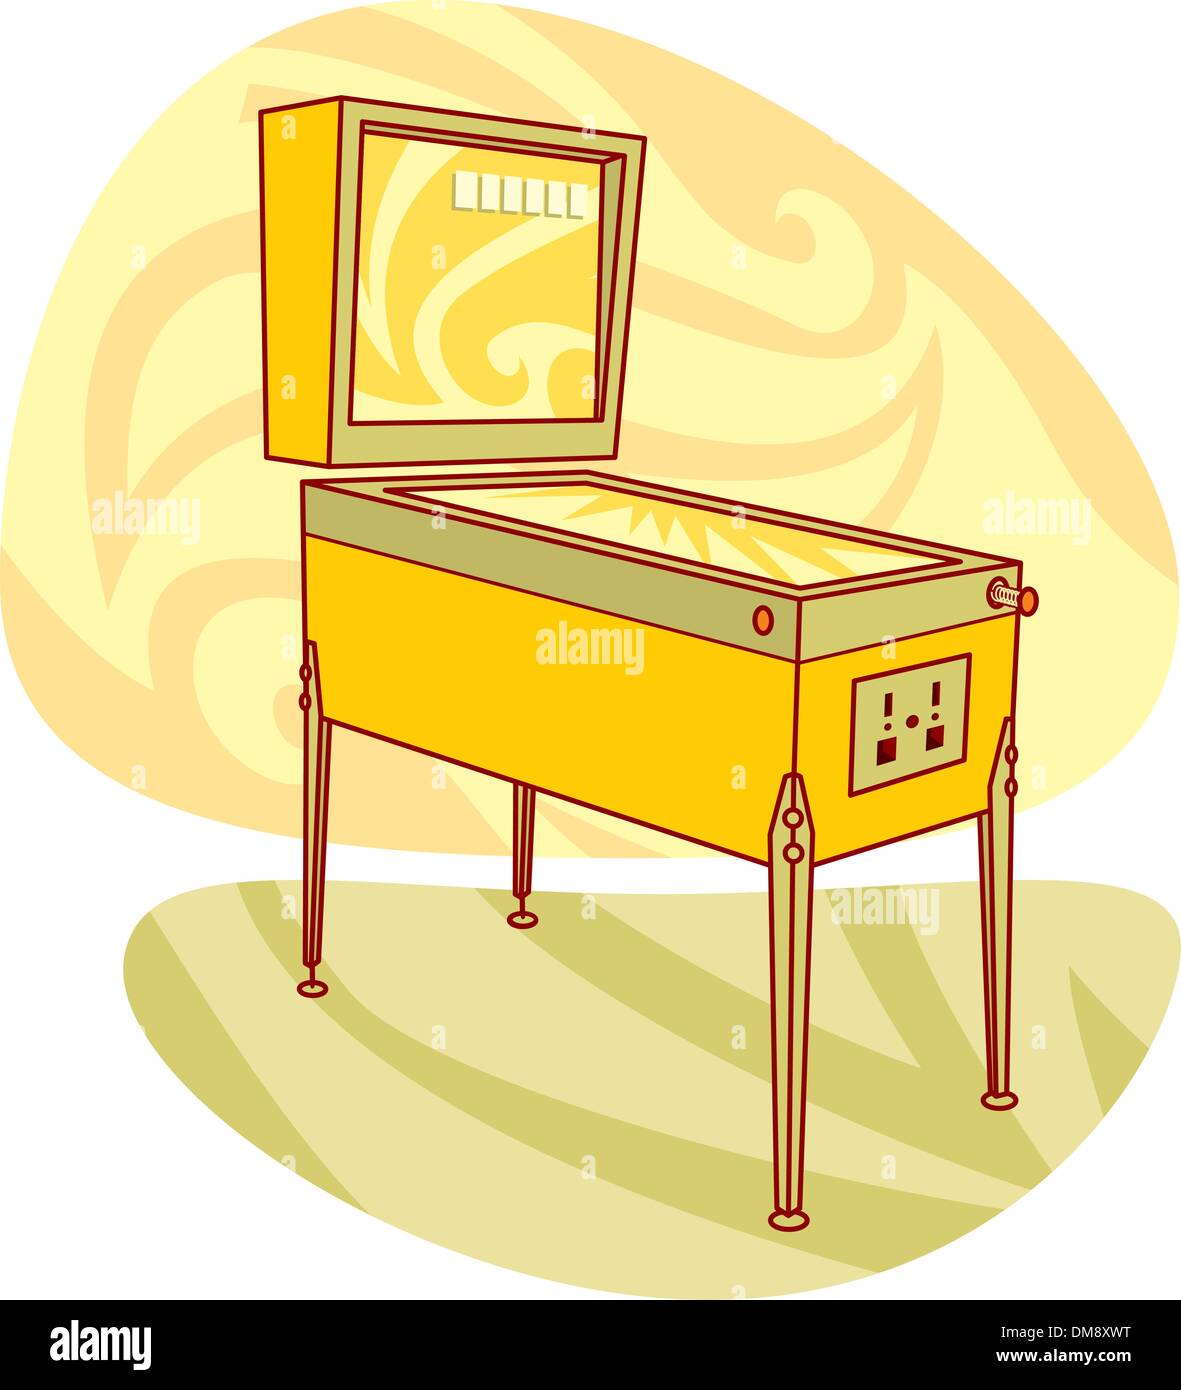 Retro games pinball machine Stock Vector